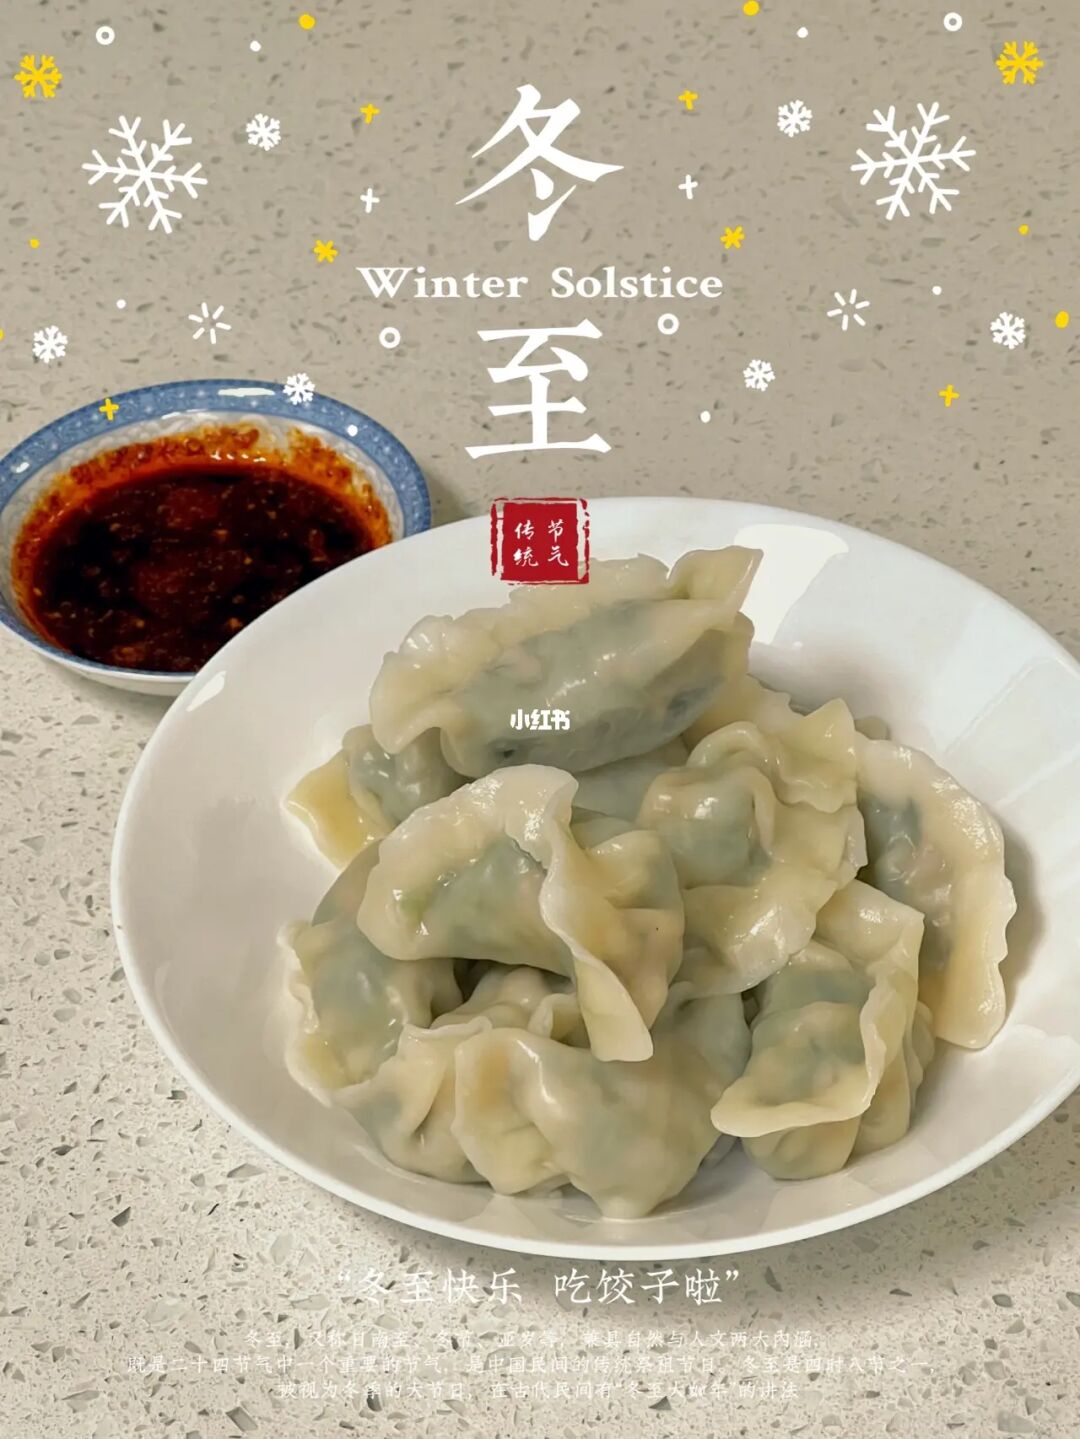 冬至吃饺子的由来的故事 冬至吃饺子的寓意、谚语及顺口溜